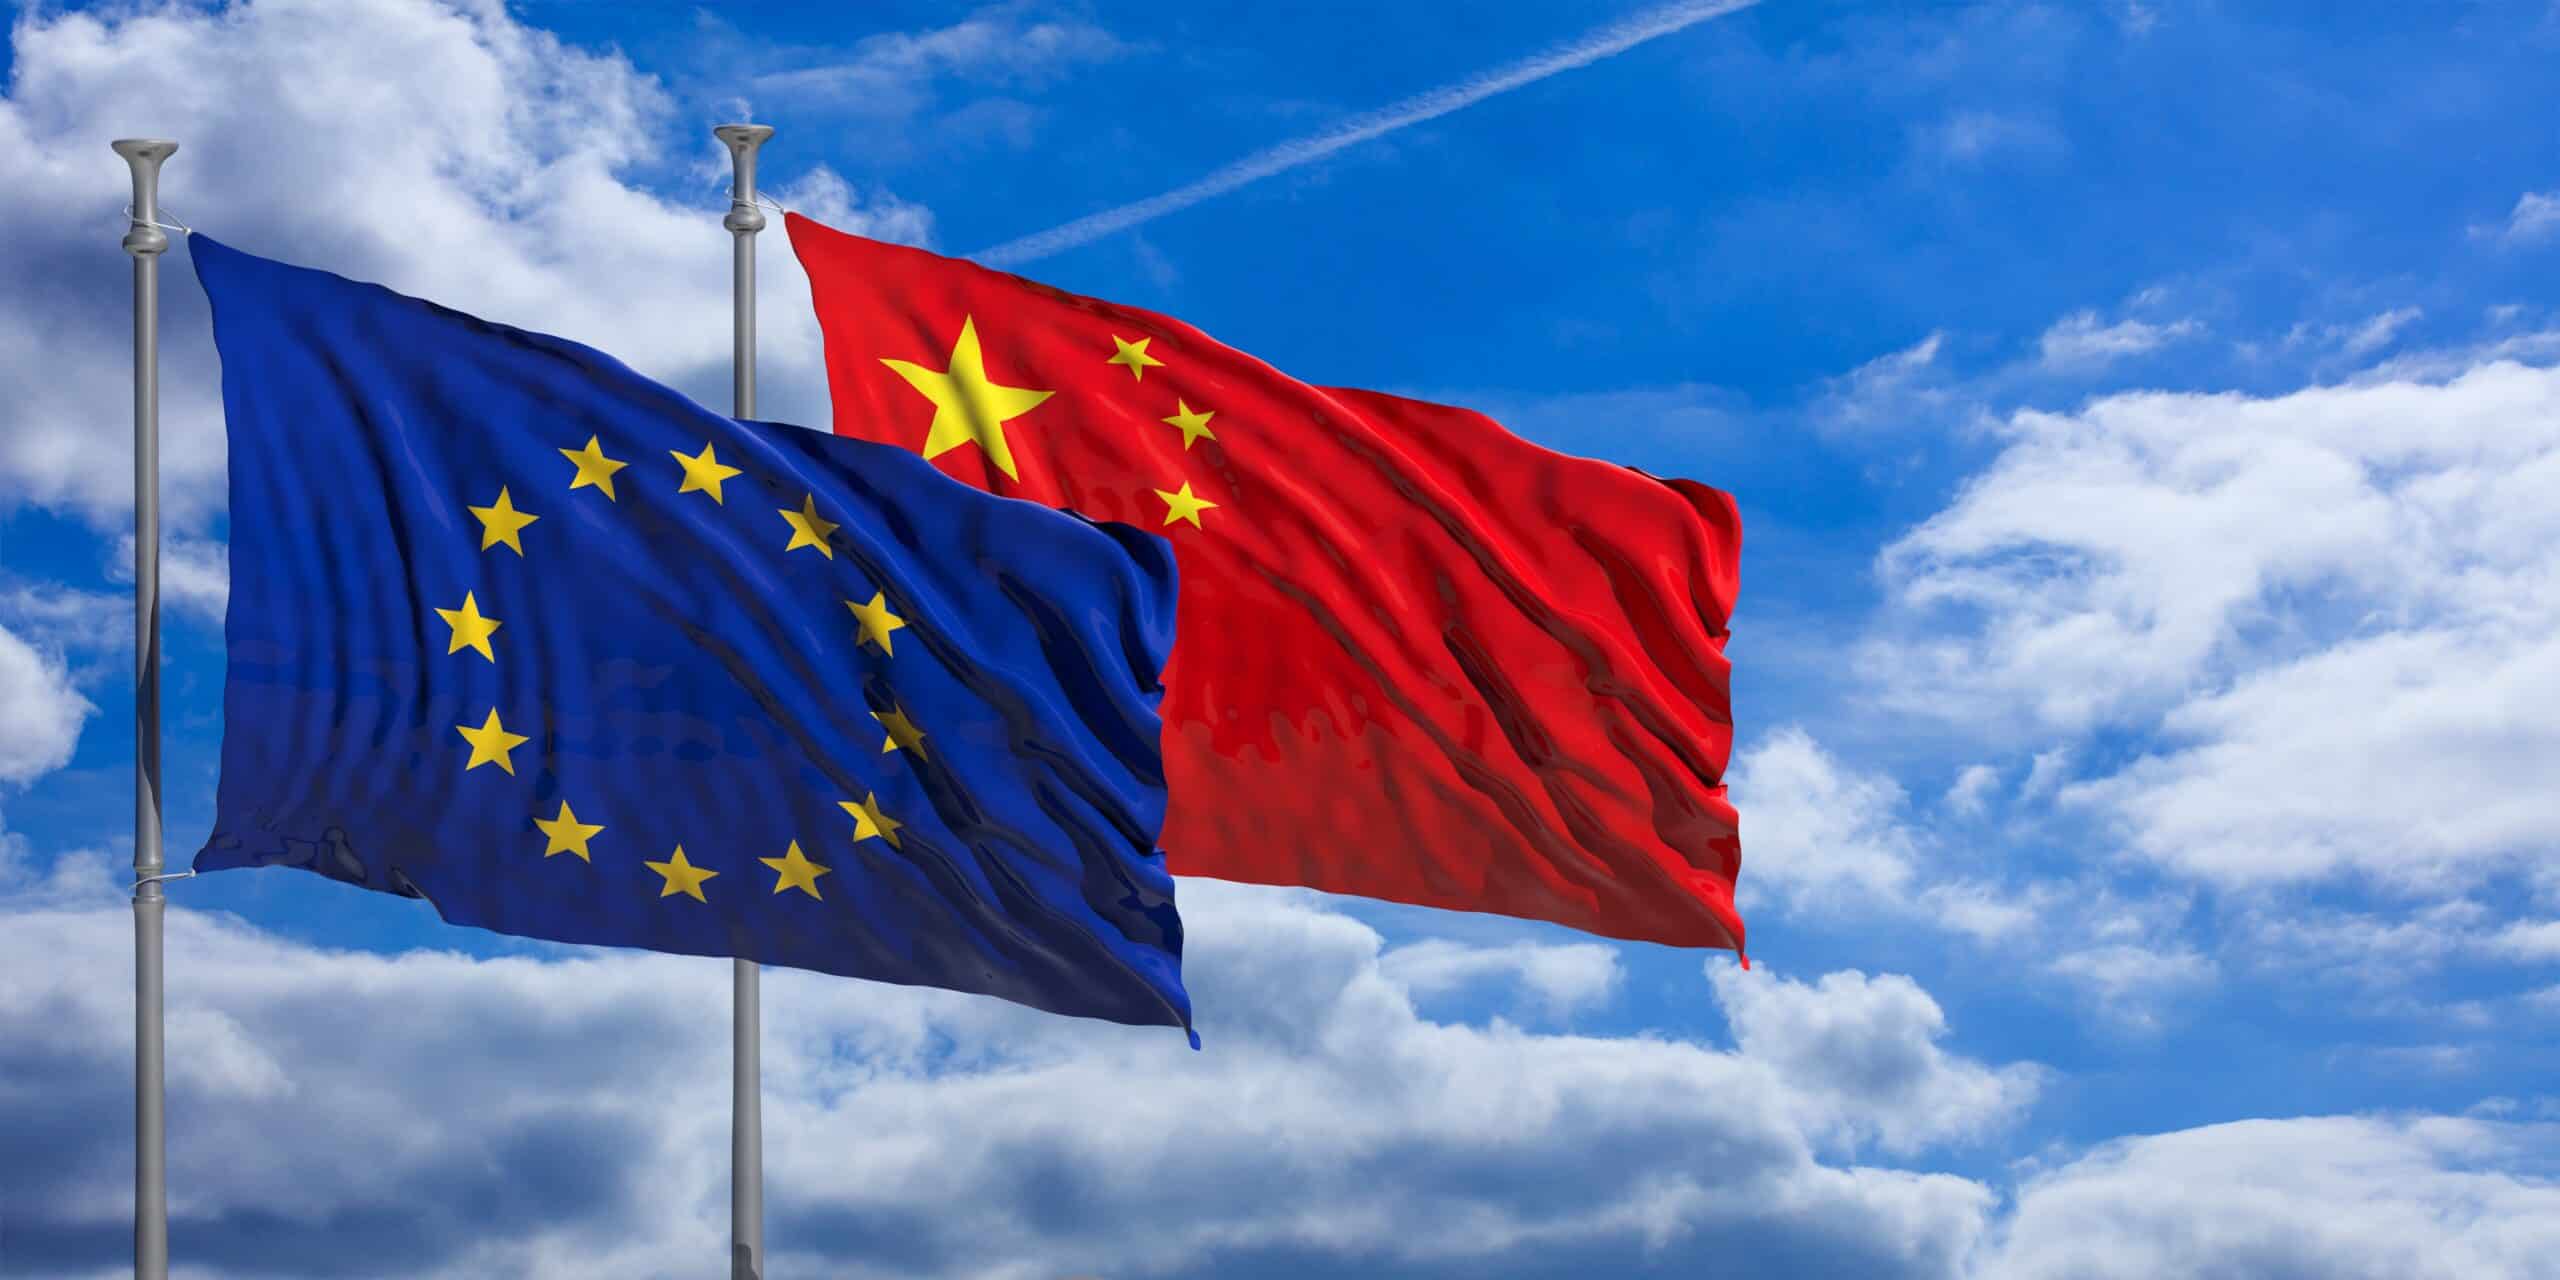 Přečtete si více ze článku Odborníci diskutovali o výzvách pro vztahy mezi EU a Čínou